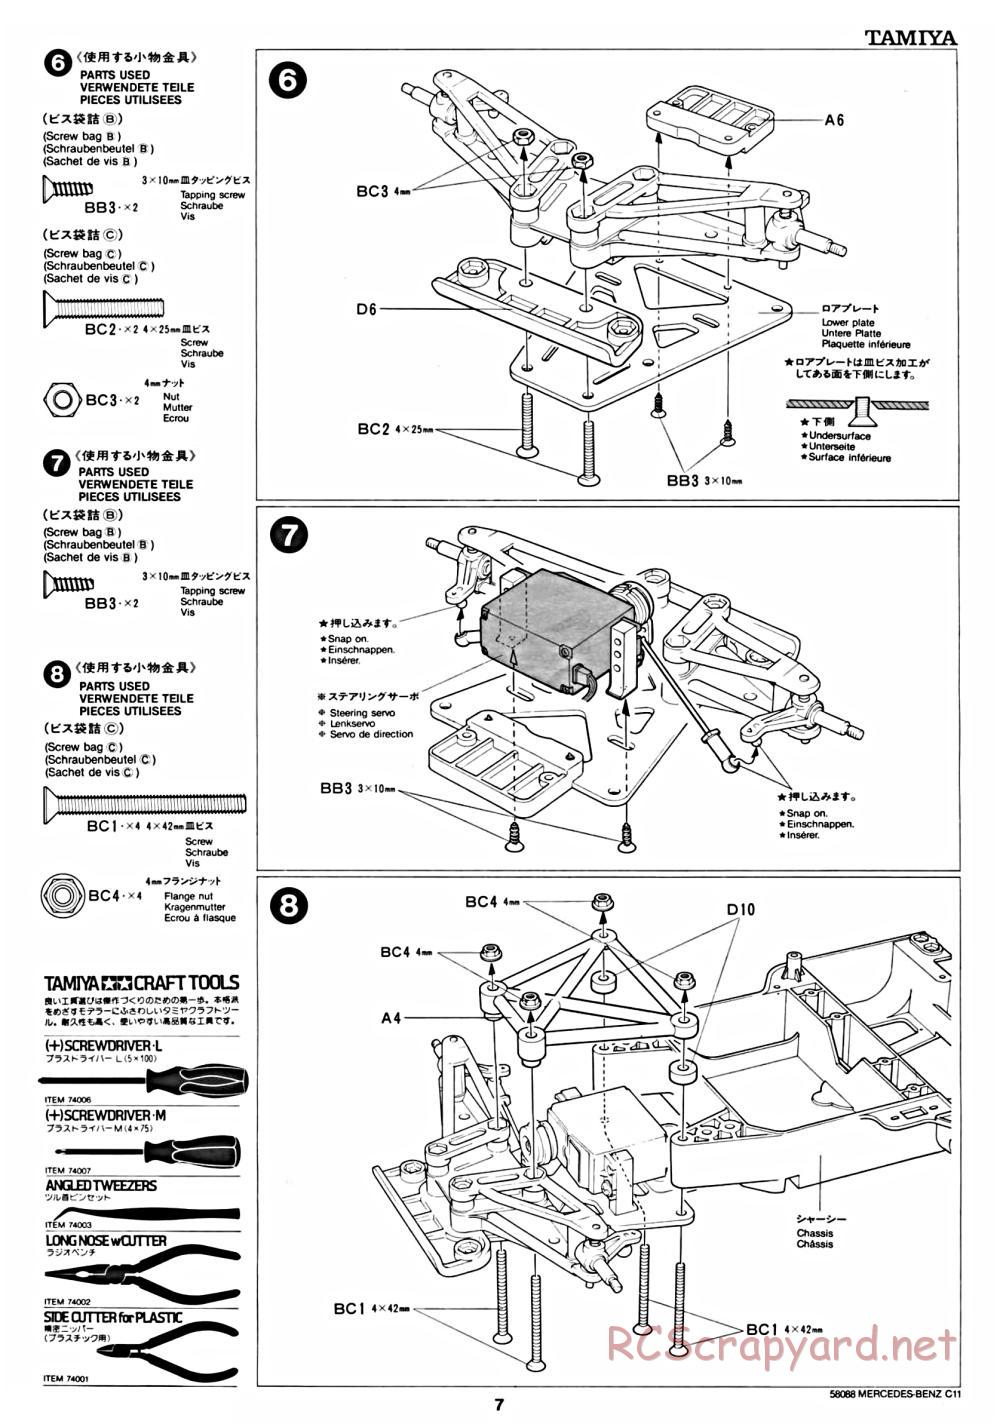 Tamiya - Mercedes Benz C11 - 58088 - Manual - Page 7